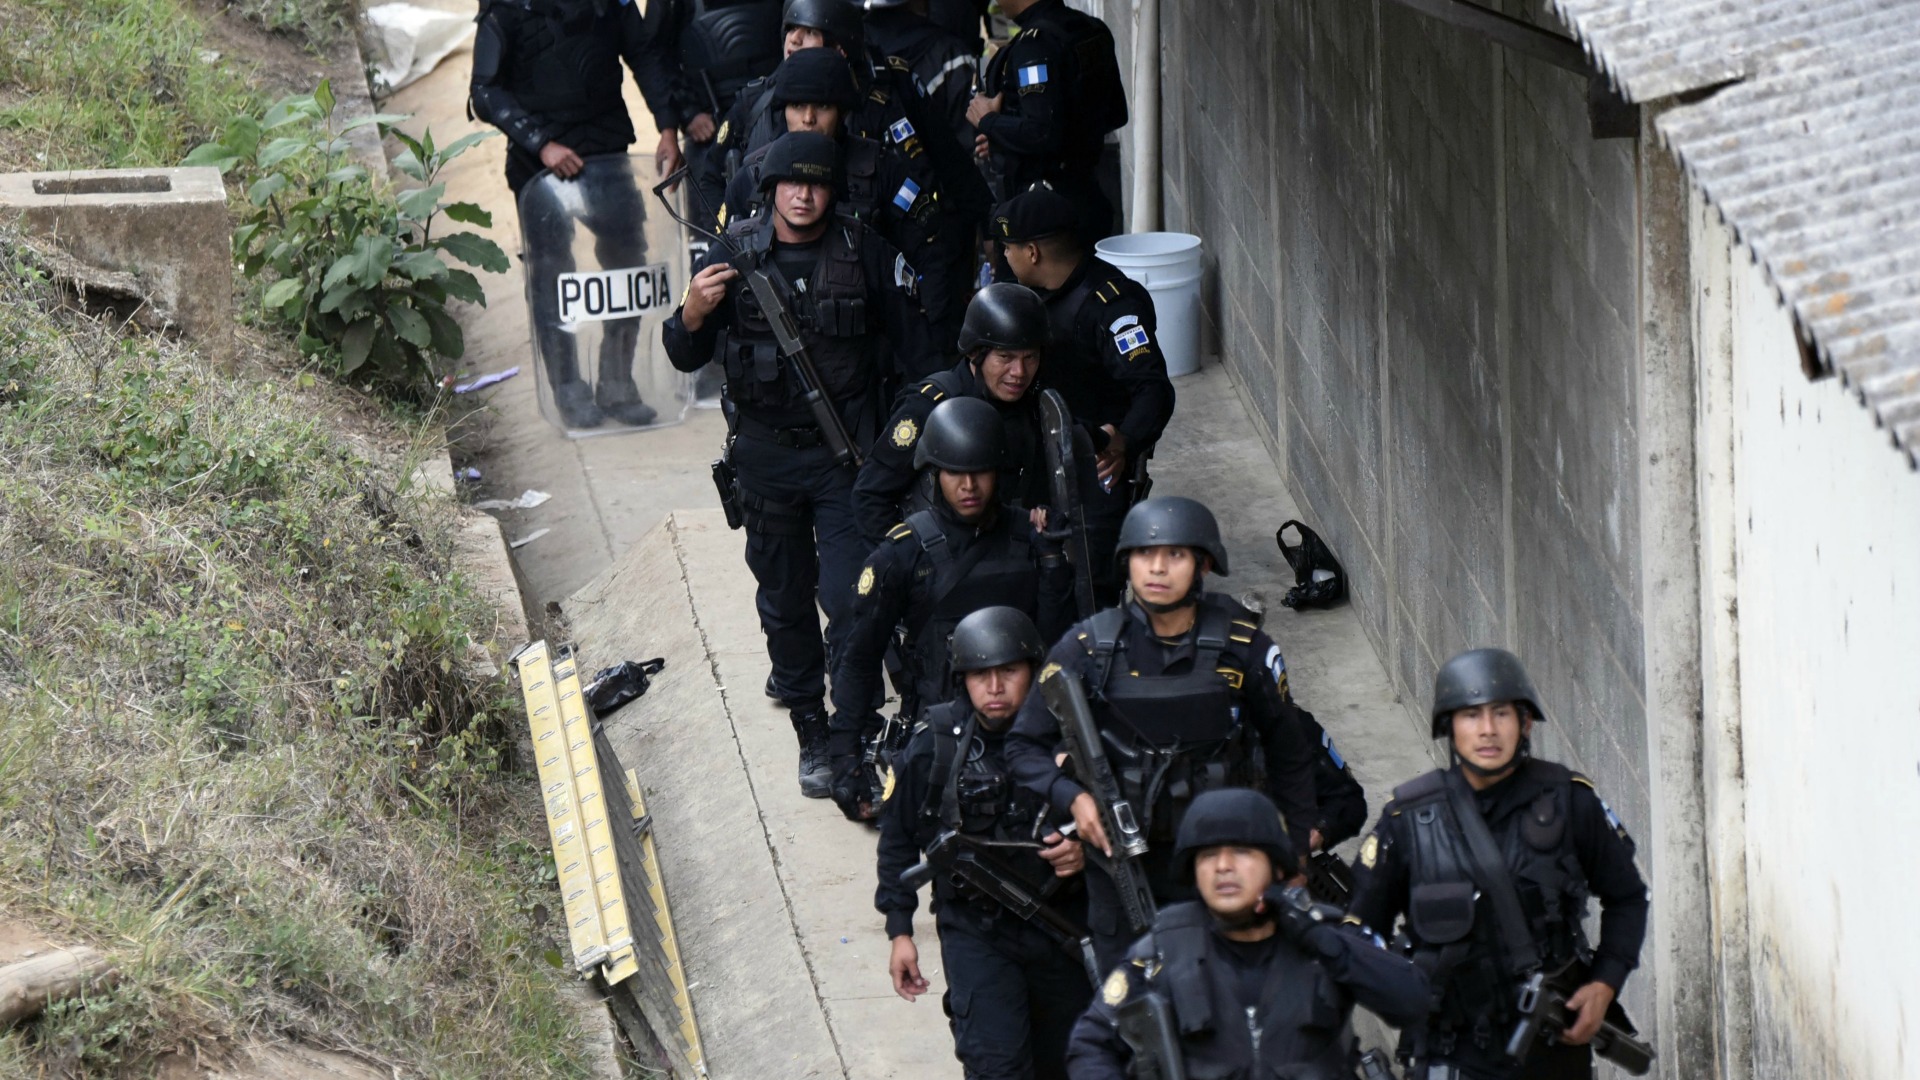 La policía pone fin al motín en el correccional de Guatemala y libera a los rehenes